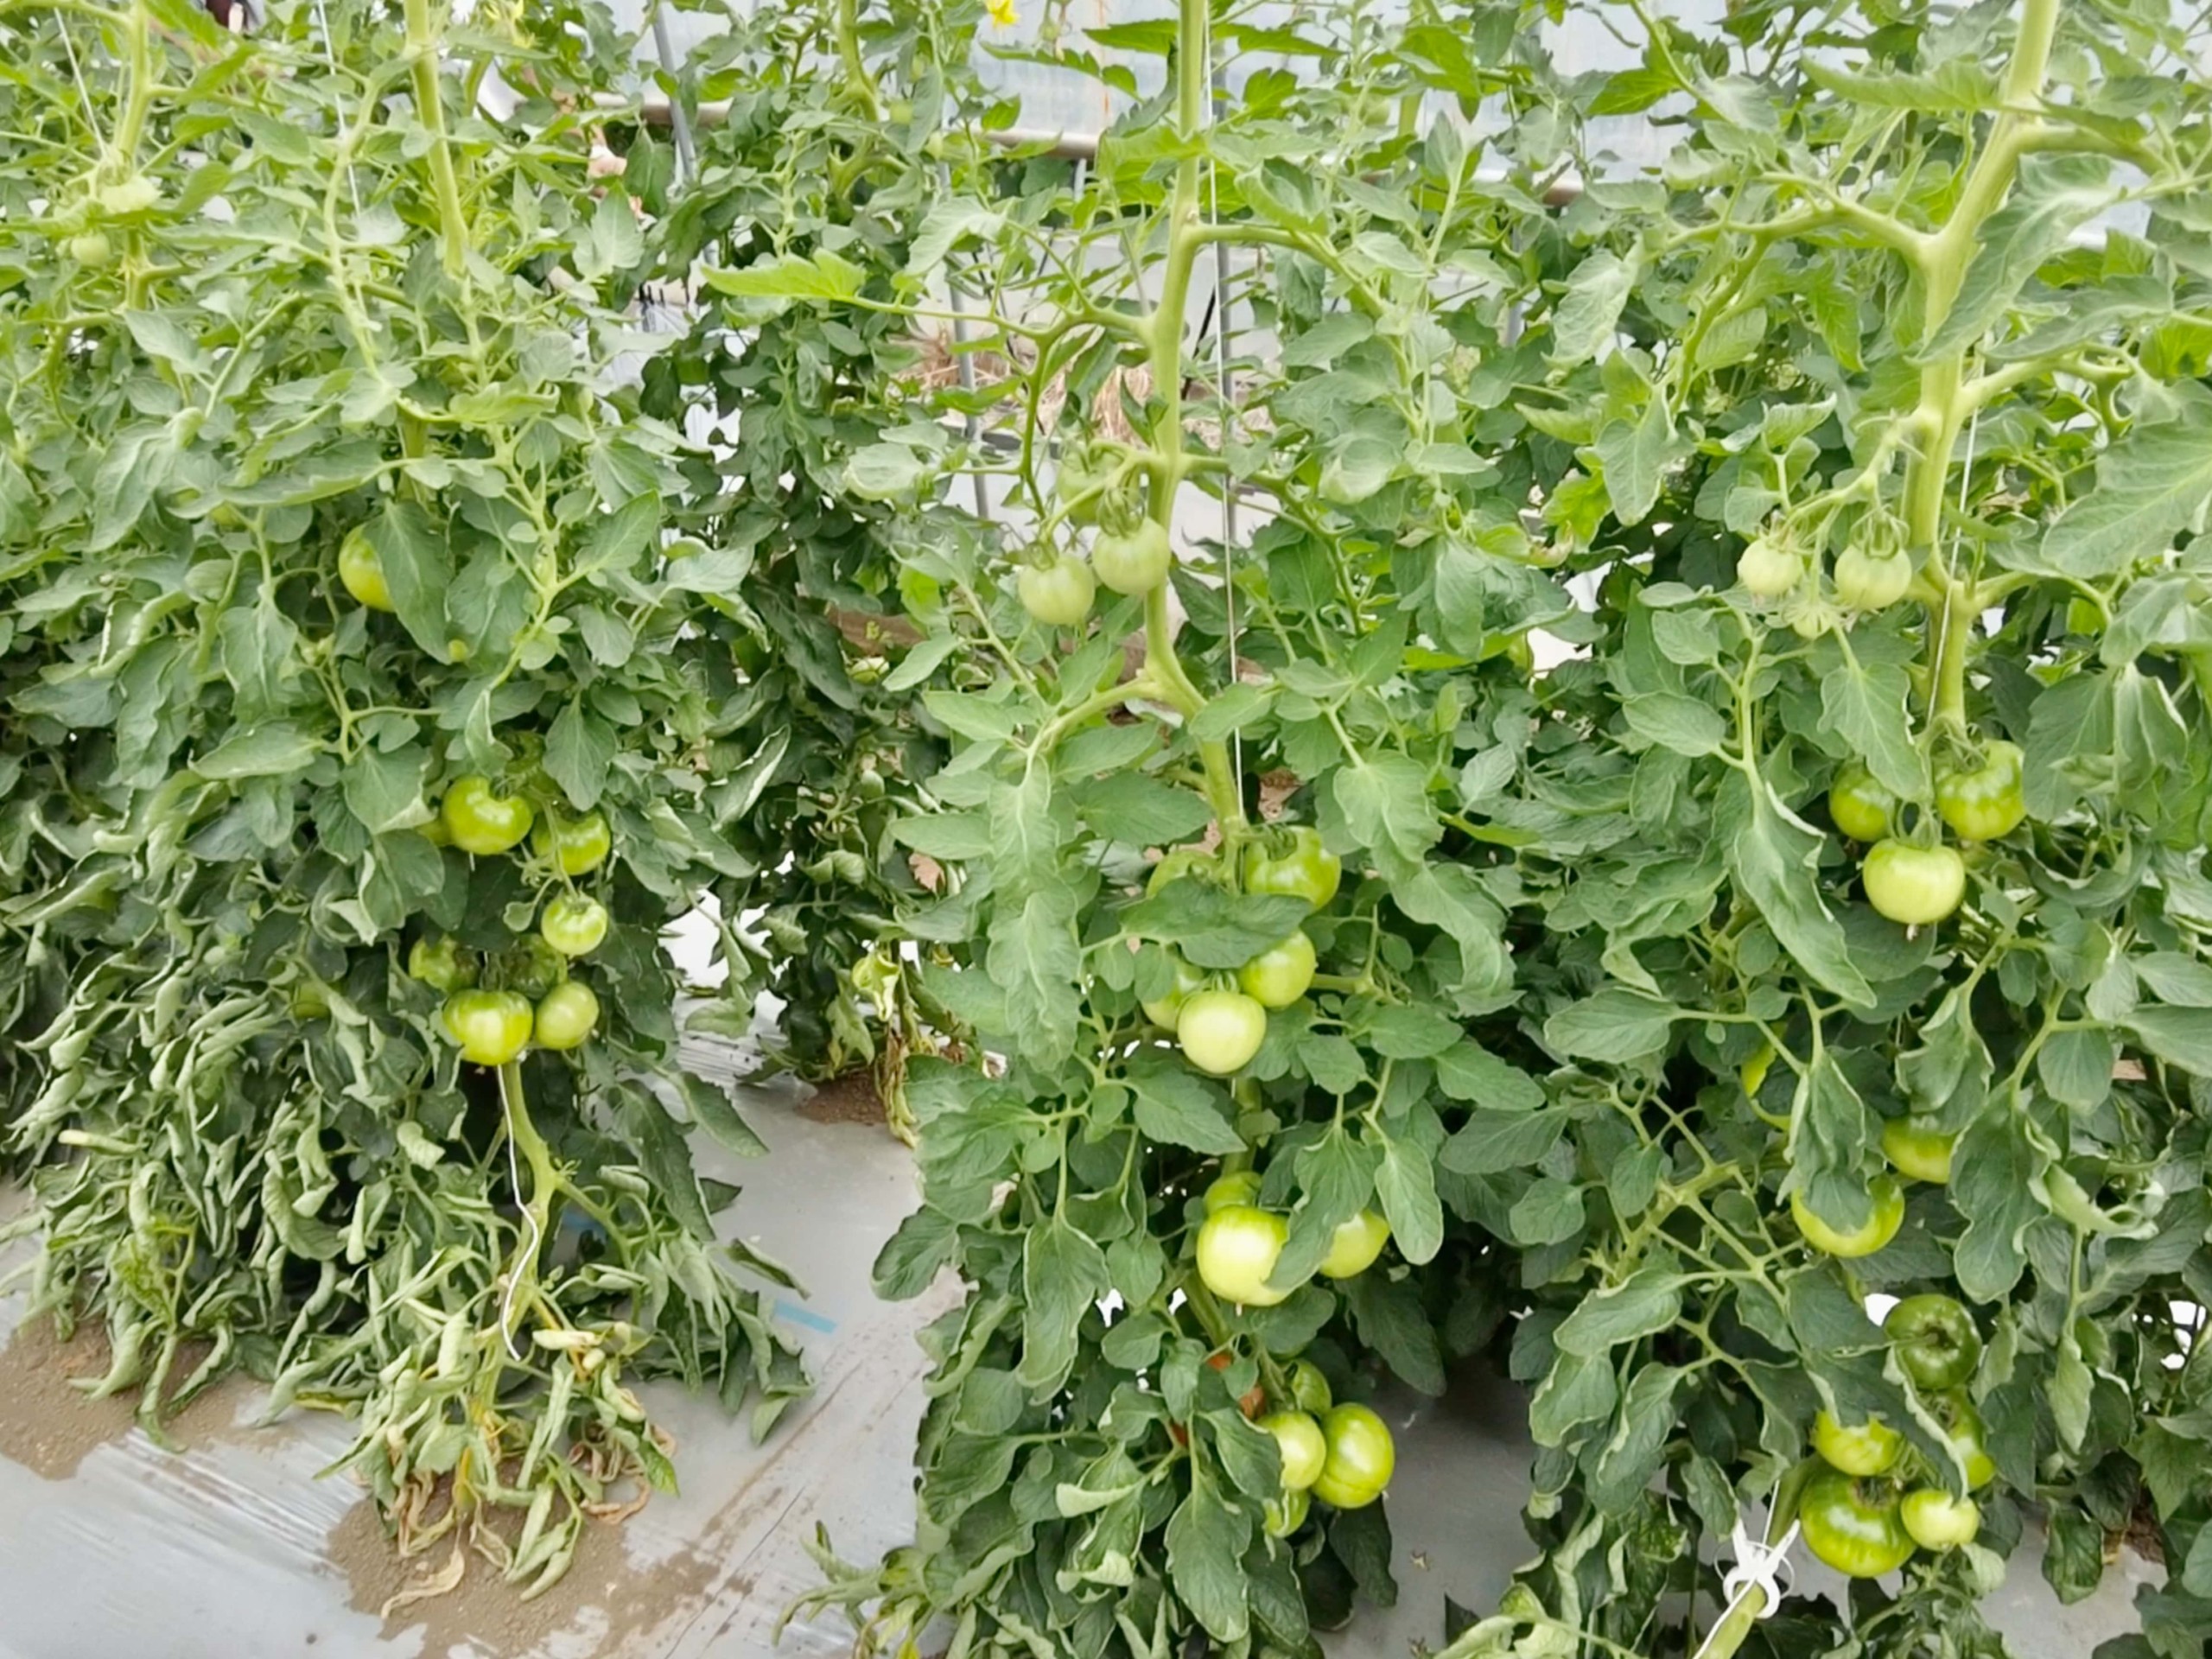 field-trials-tomato-4608x3456-2-3